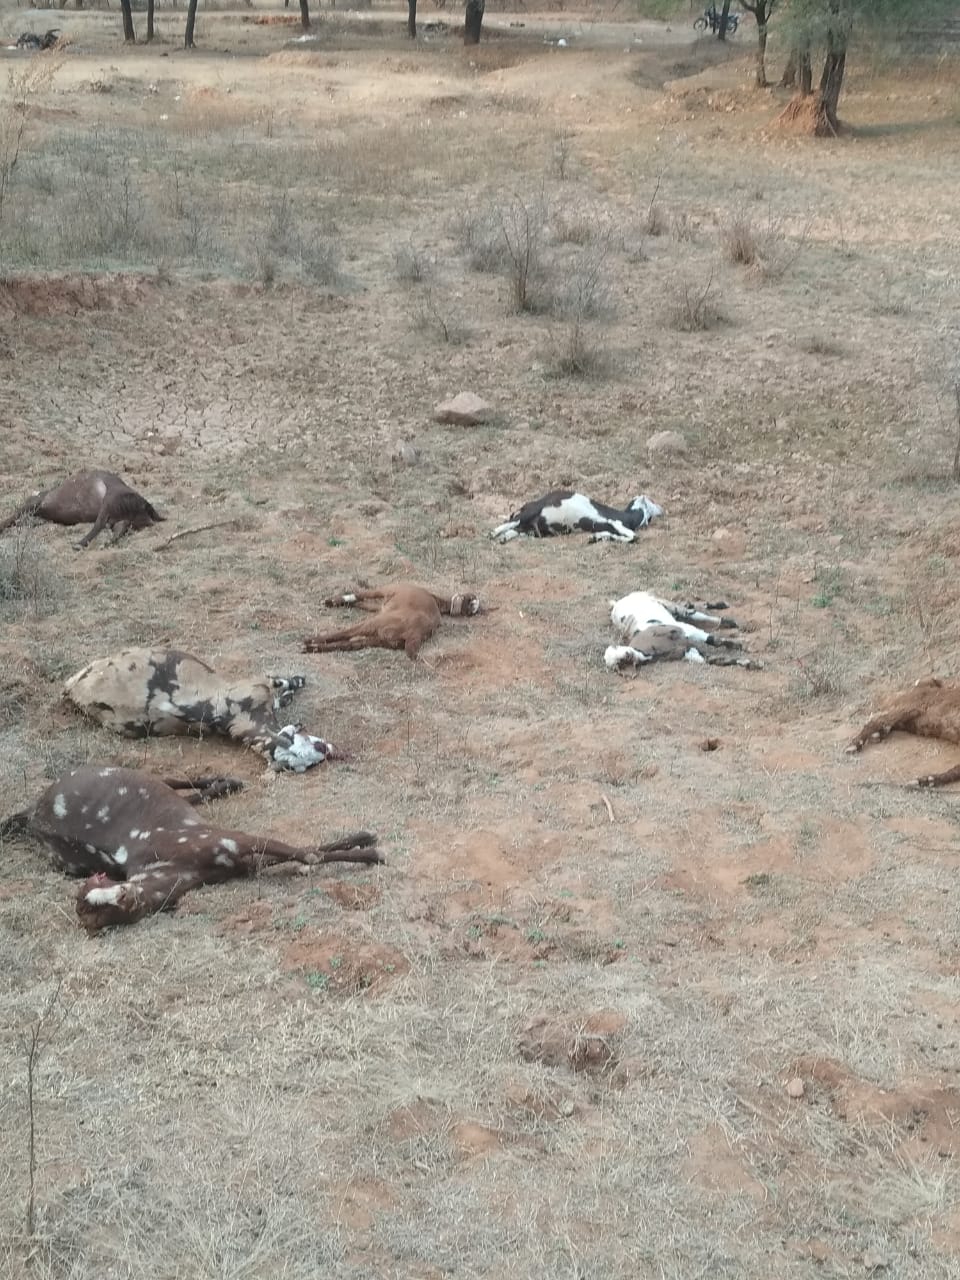 अचानक तबीयत बिगड़ी, एक के बाद एक दस बकरियों की मौत